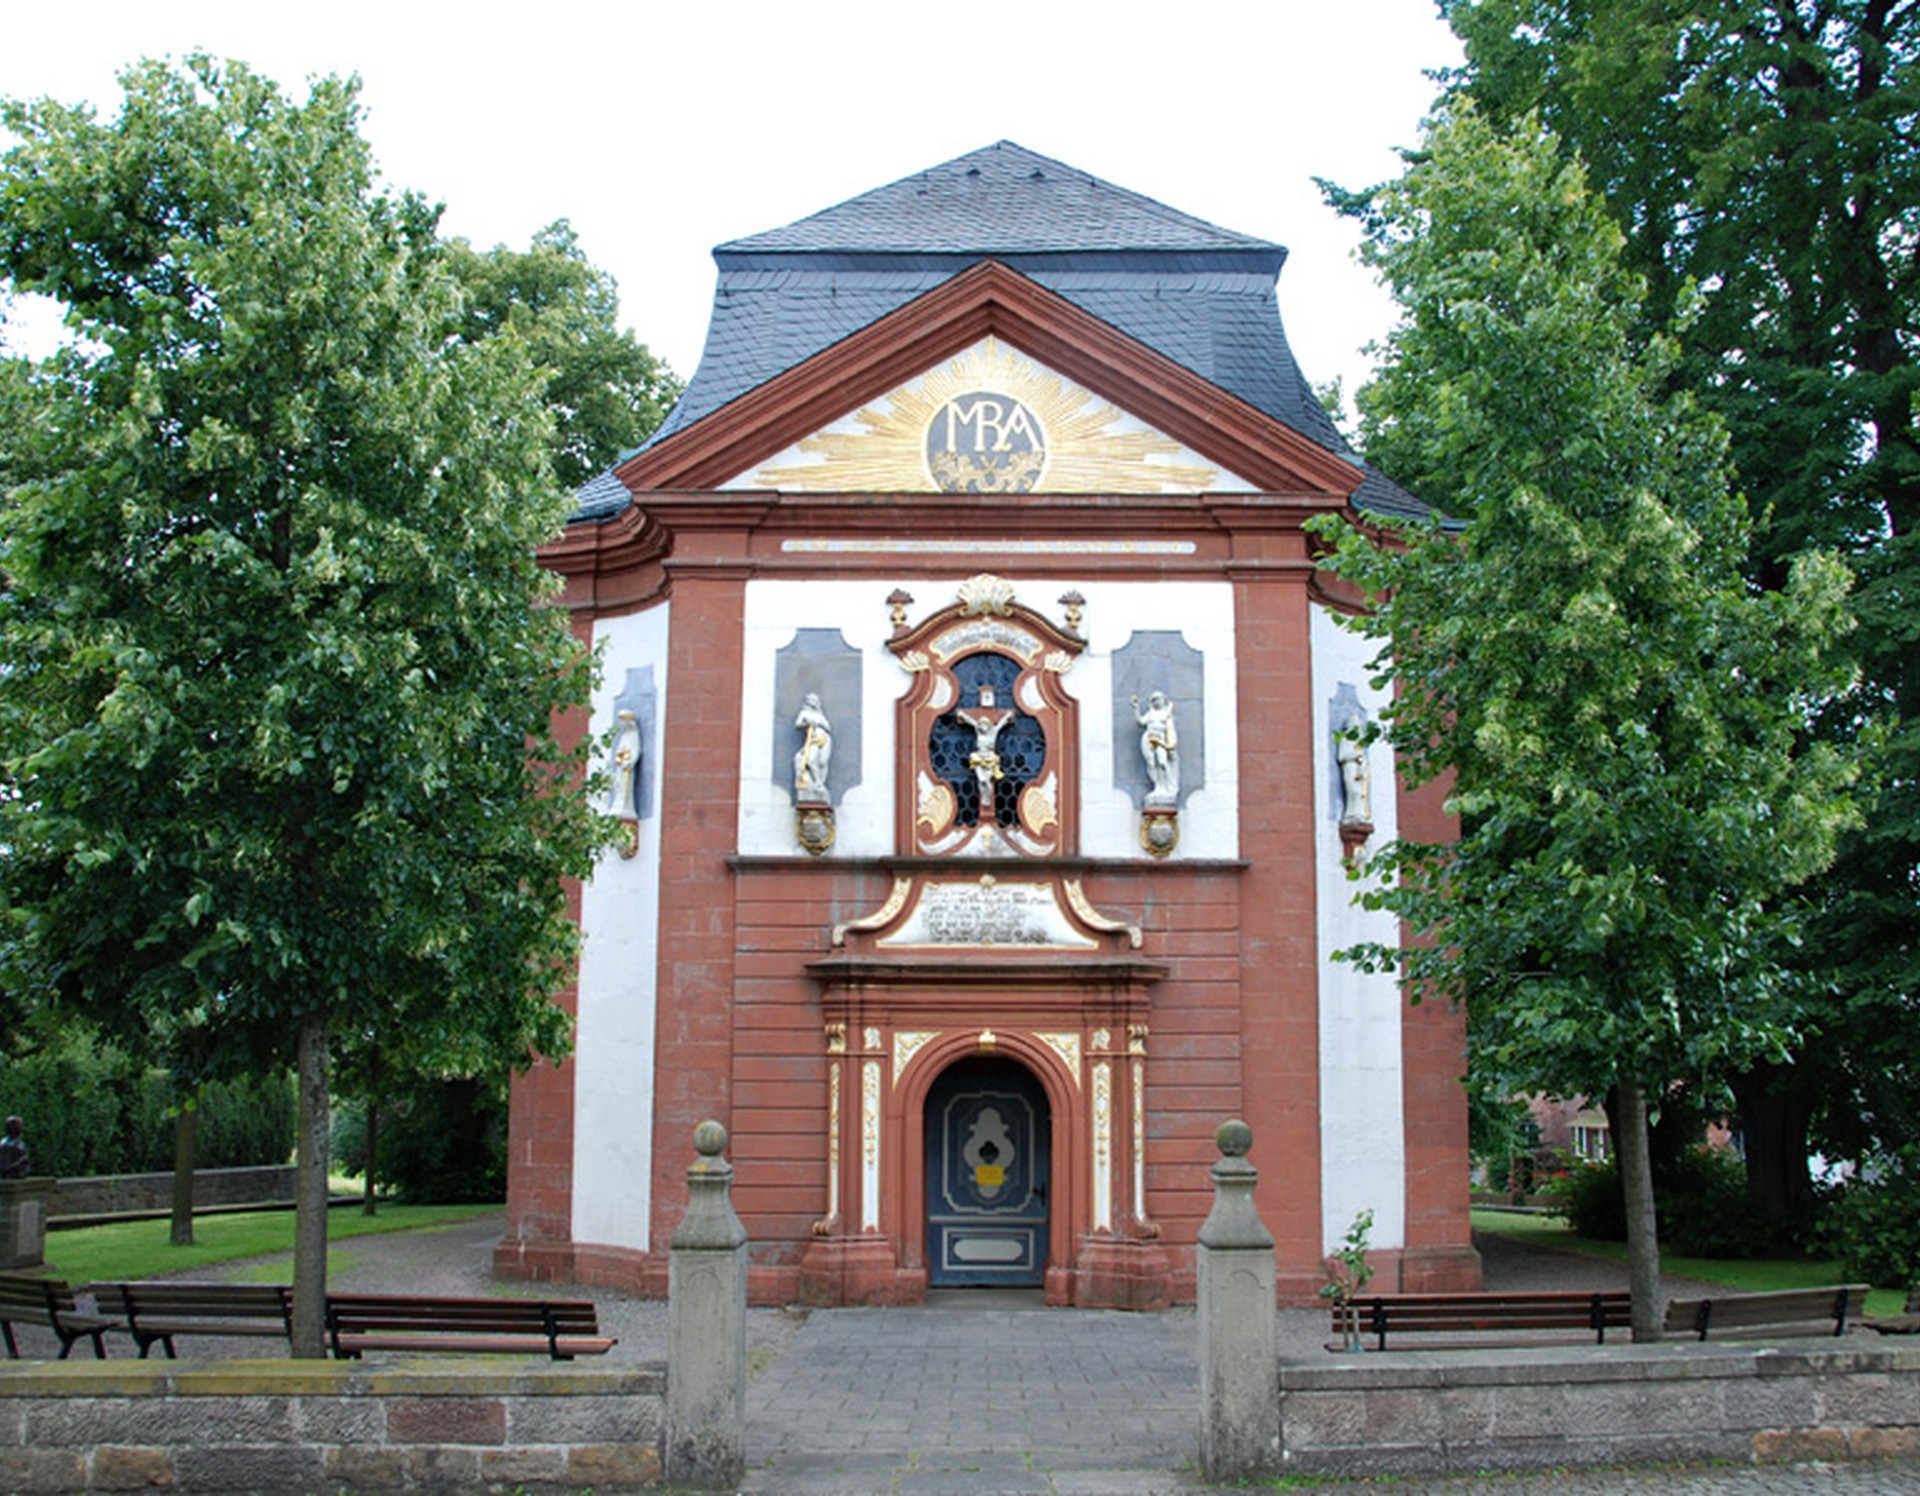 Blick auf die Wallfahrtskirche Mariä Heimsuchung. Über dem Eingang befindet sich ein Kruzifix aus Sandstein vor einem Fenster. Seitlich davon befinden sich Figuren.